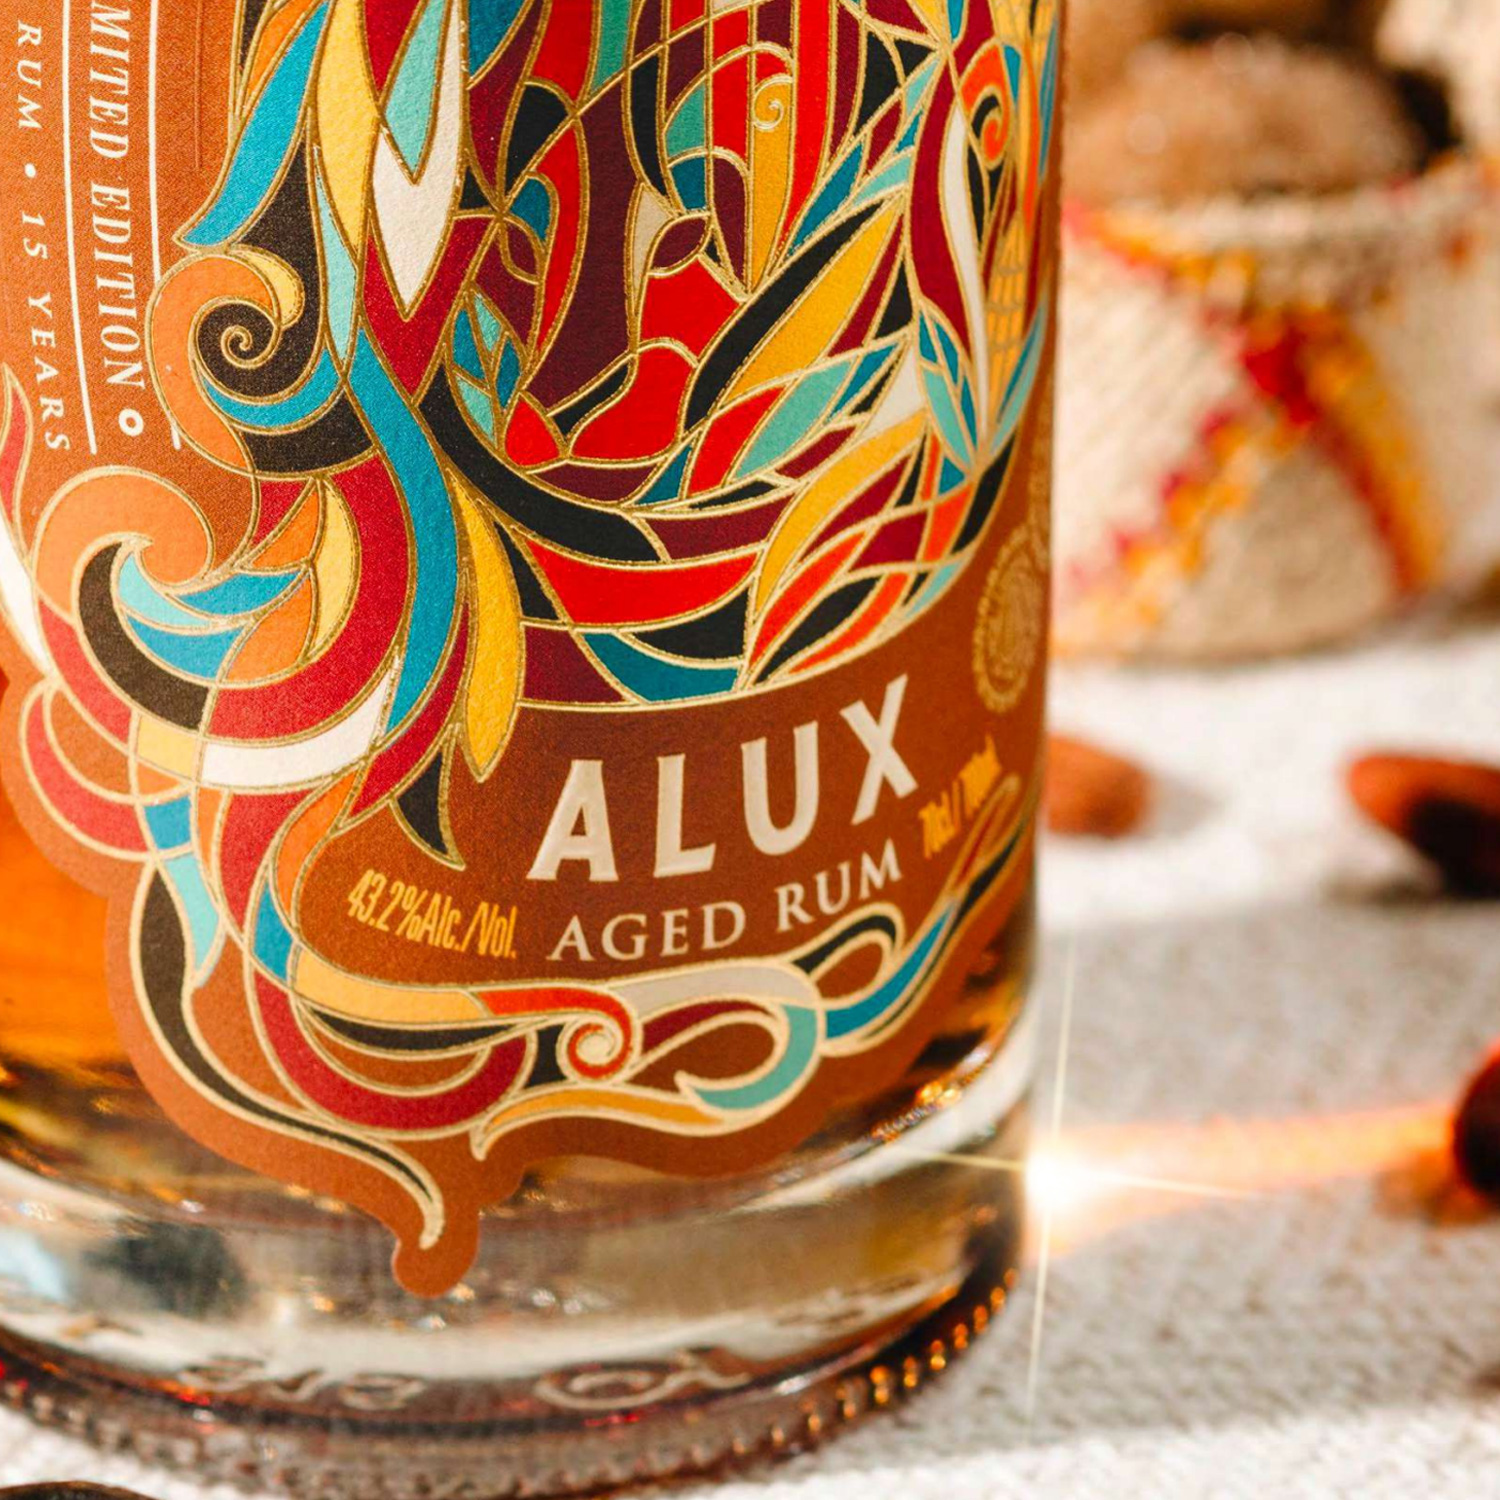 Cihuatan Alux Rum El Salvador 15YO Limited Edition 2022